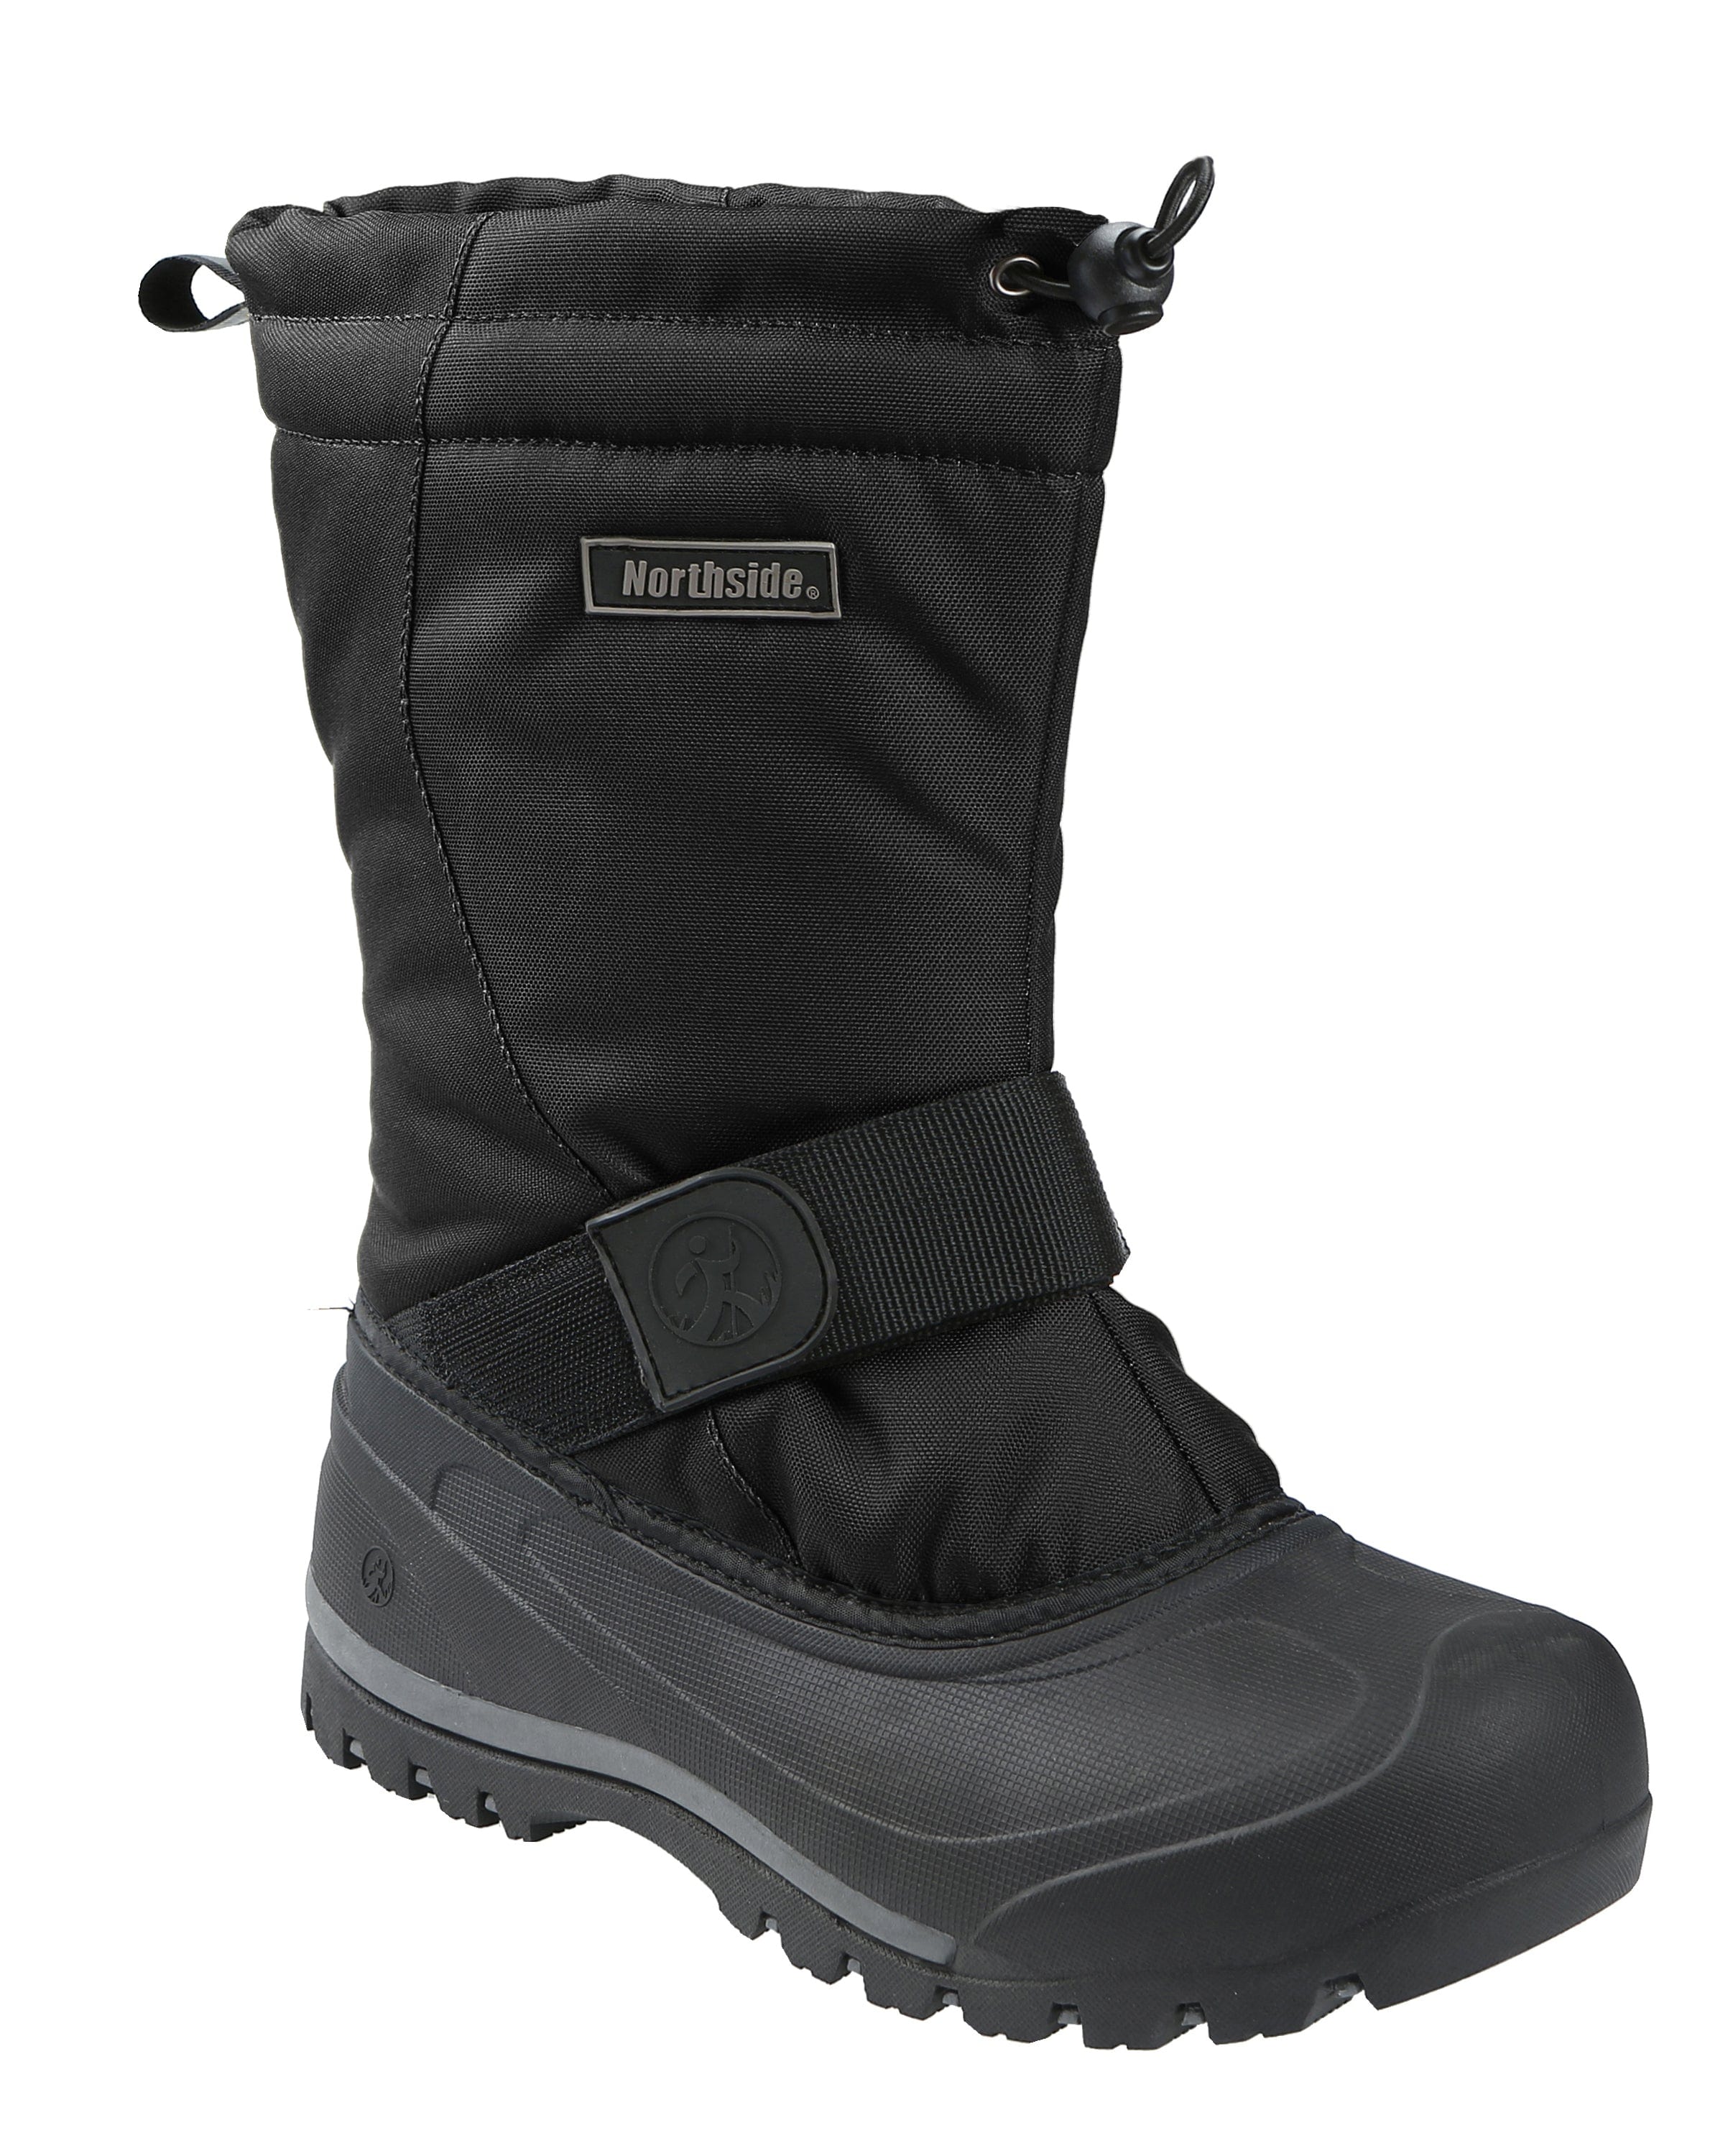 Women's Modesto Waterproof Insulated Winter Snow Boot